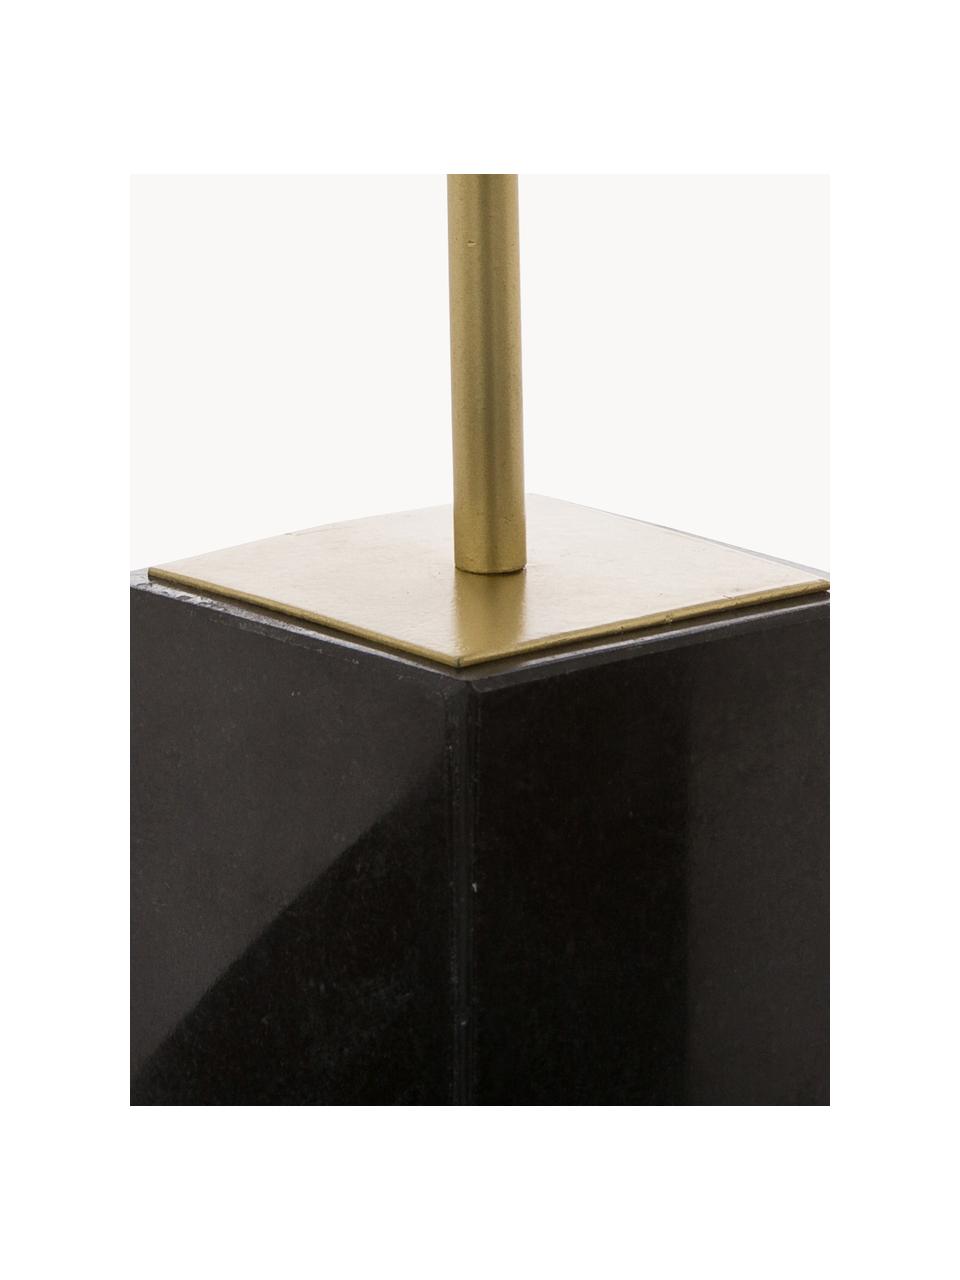 Objet décoratif avec pied en marbre Marball, Couleur dorée, noir, marbré, Ø 15 x haut. 30 cm